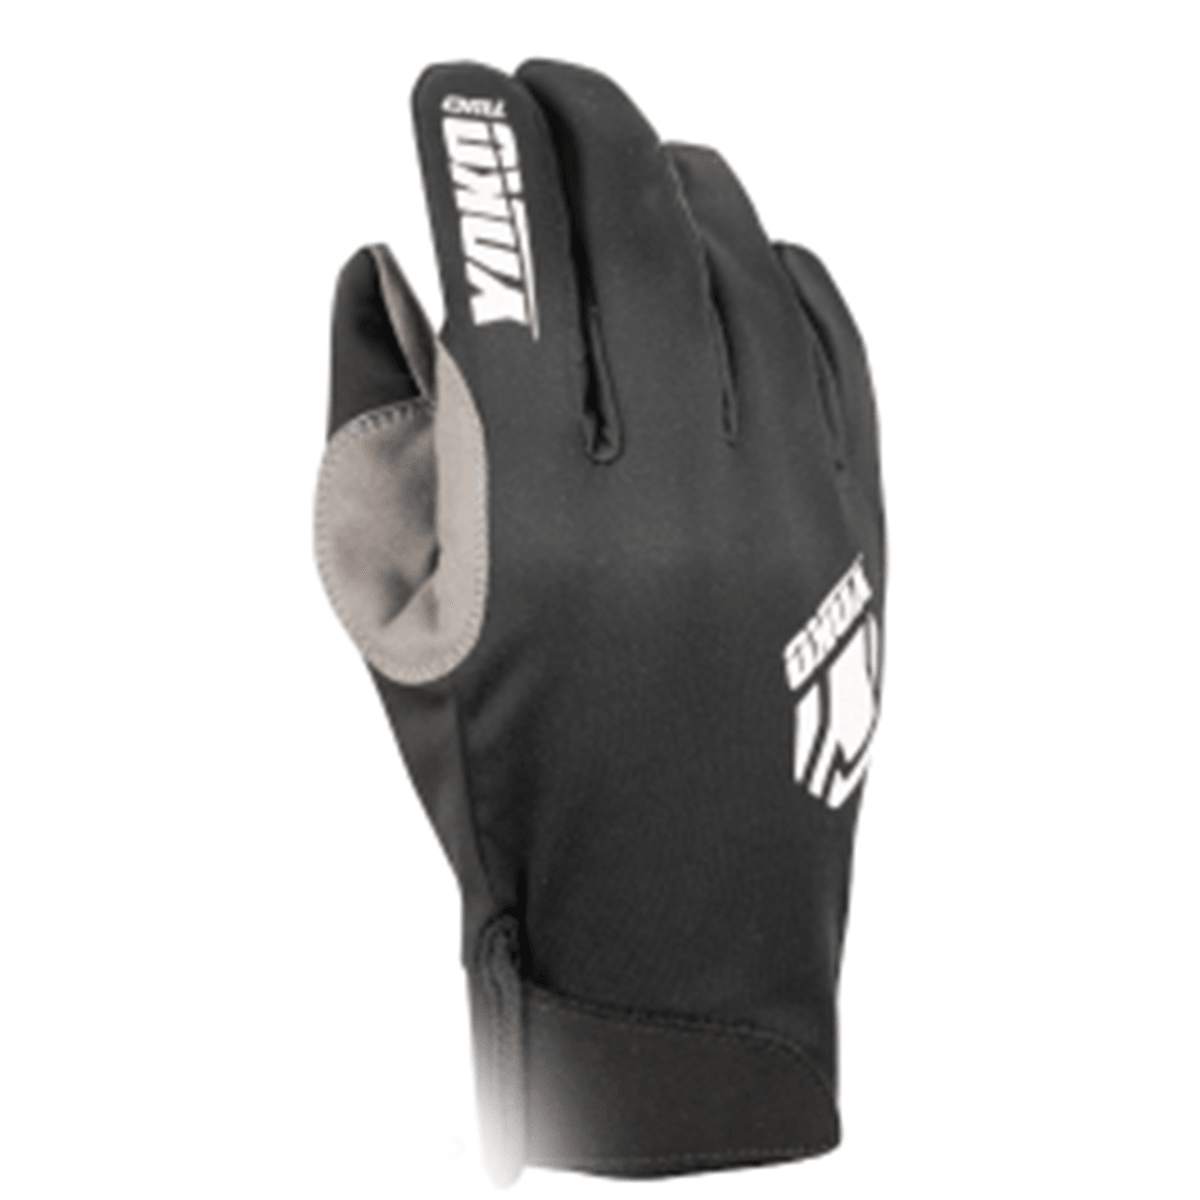 Yoko Two Gloves (M) - pikkorisport